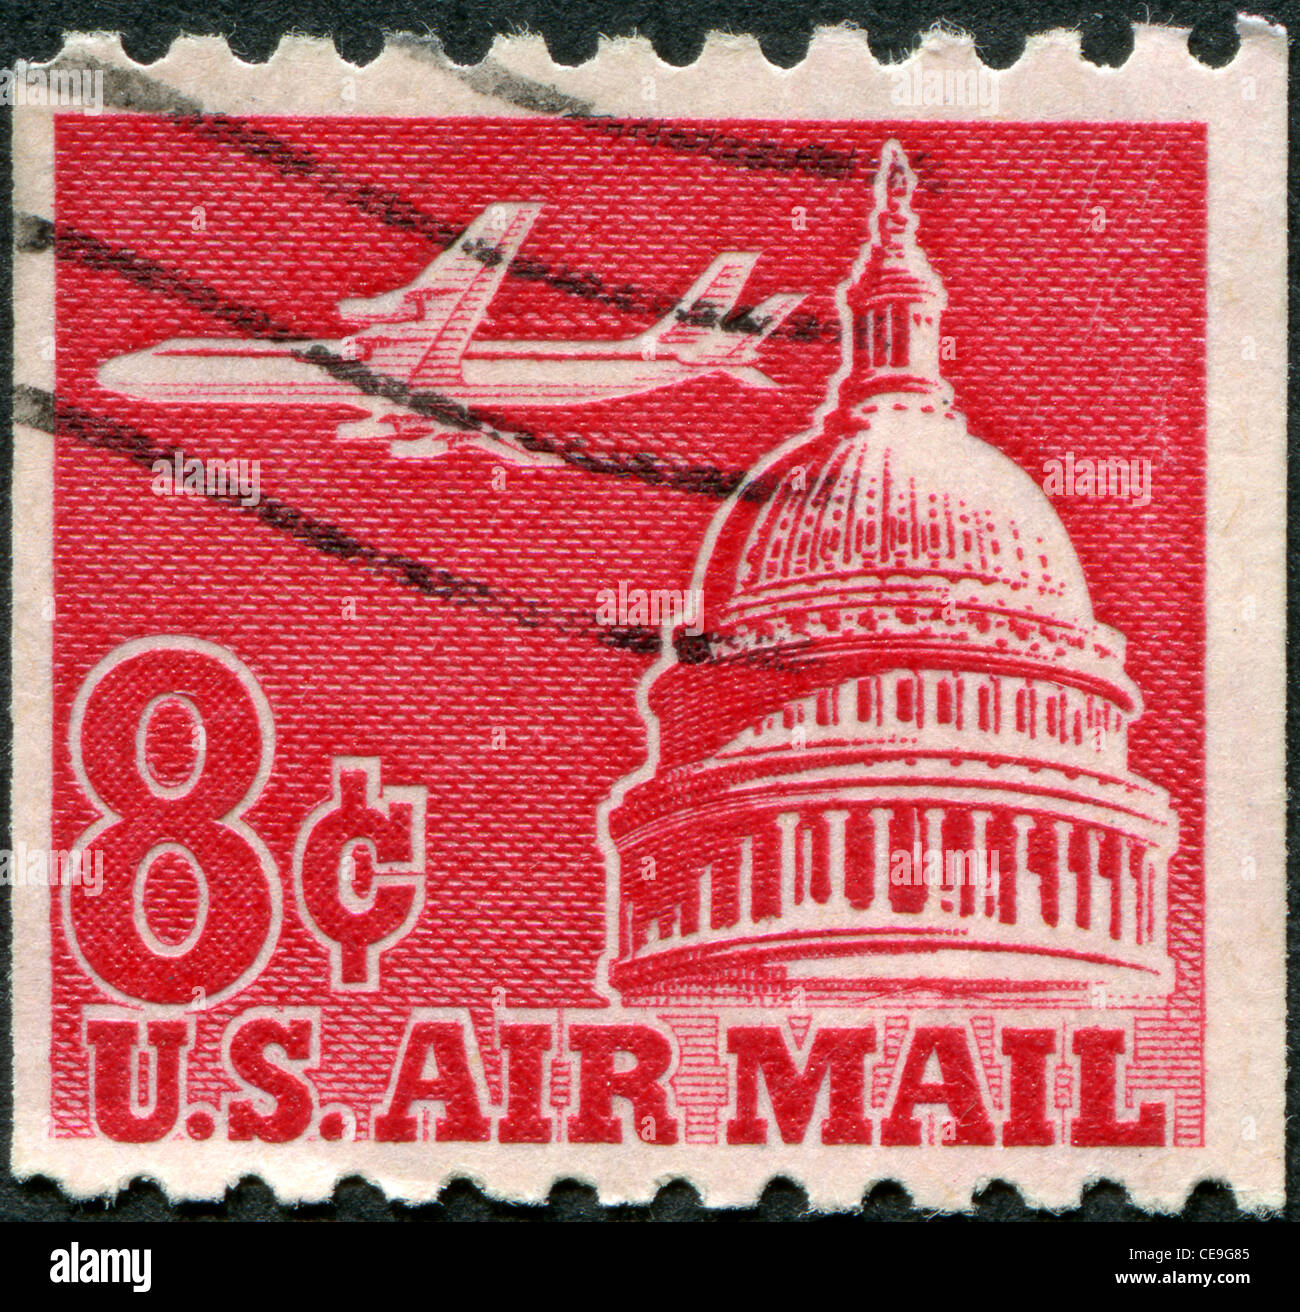 USA - circa 1962 : timbre imprimé aux Etats-Unis, montre un avion de ligne (Douglas DC-8) sur Capitol, vers 1962 Banque D'Images